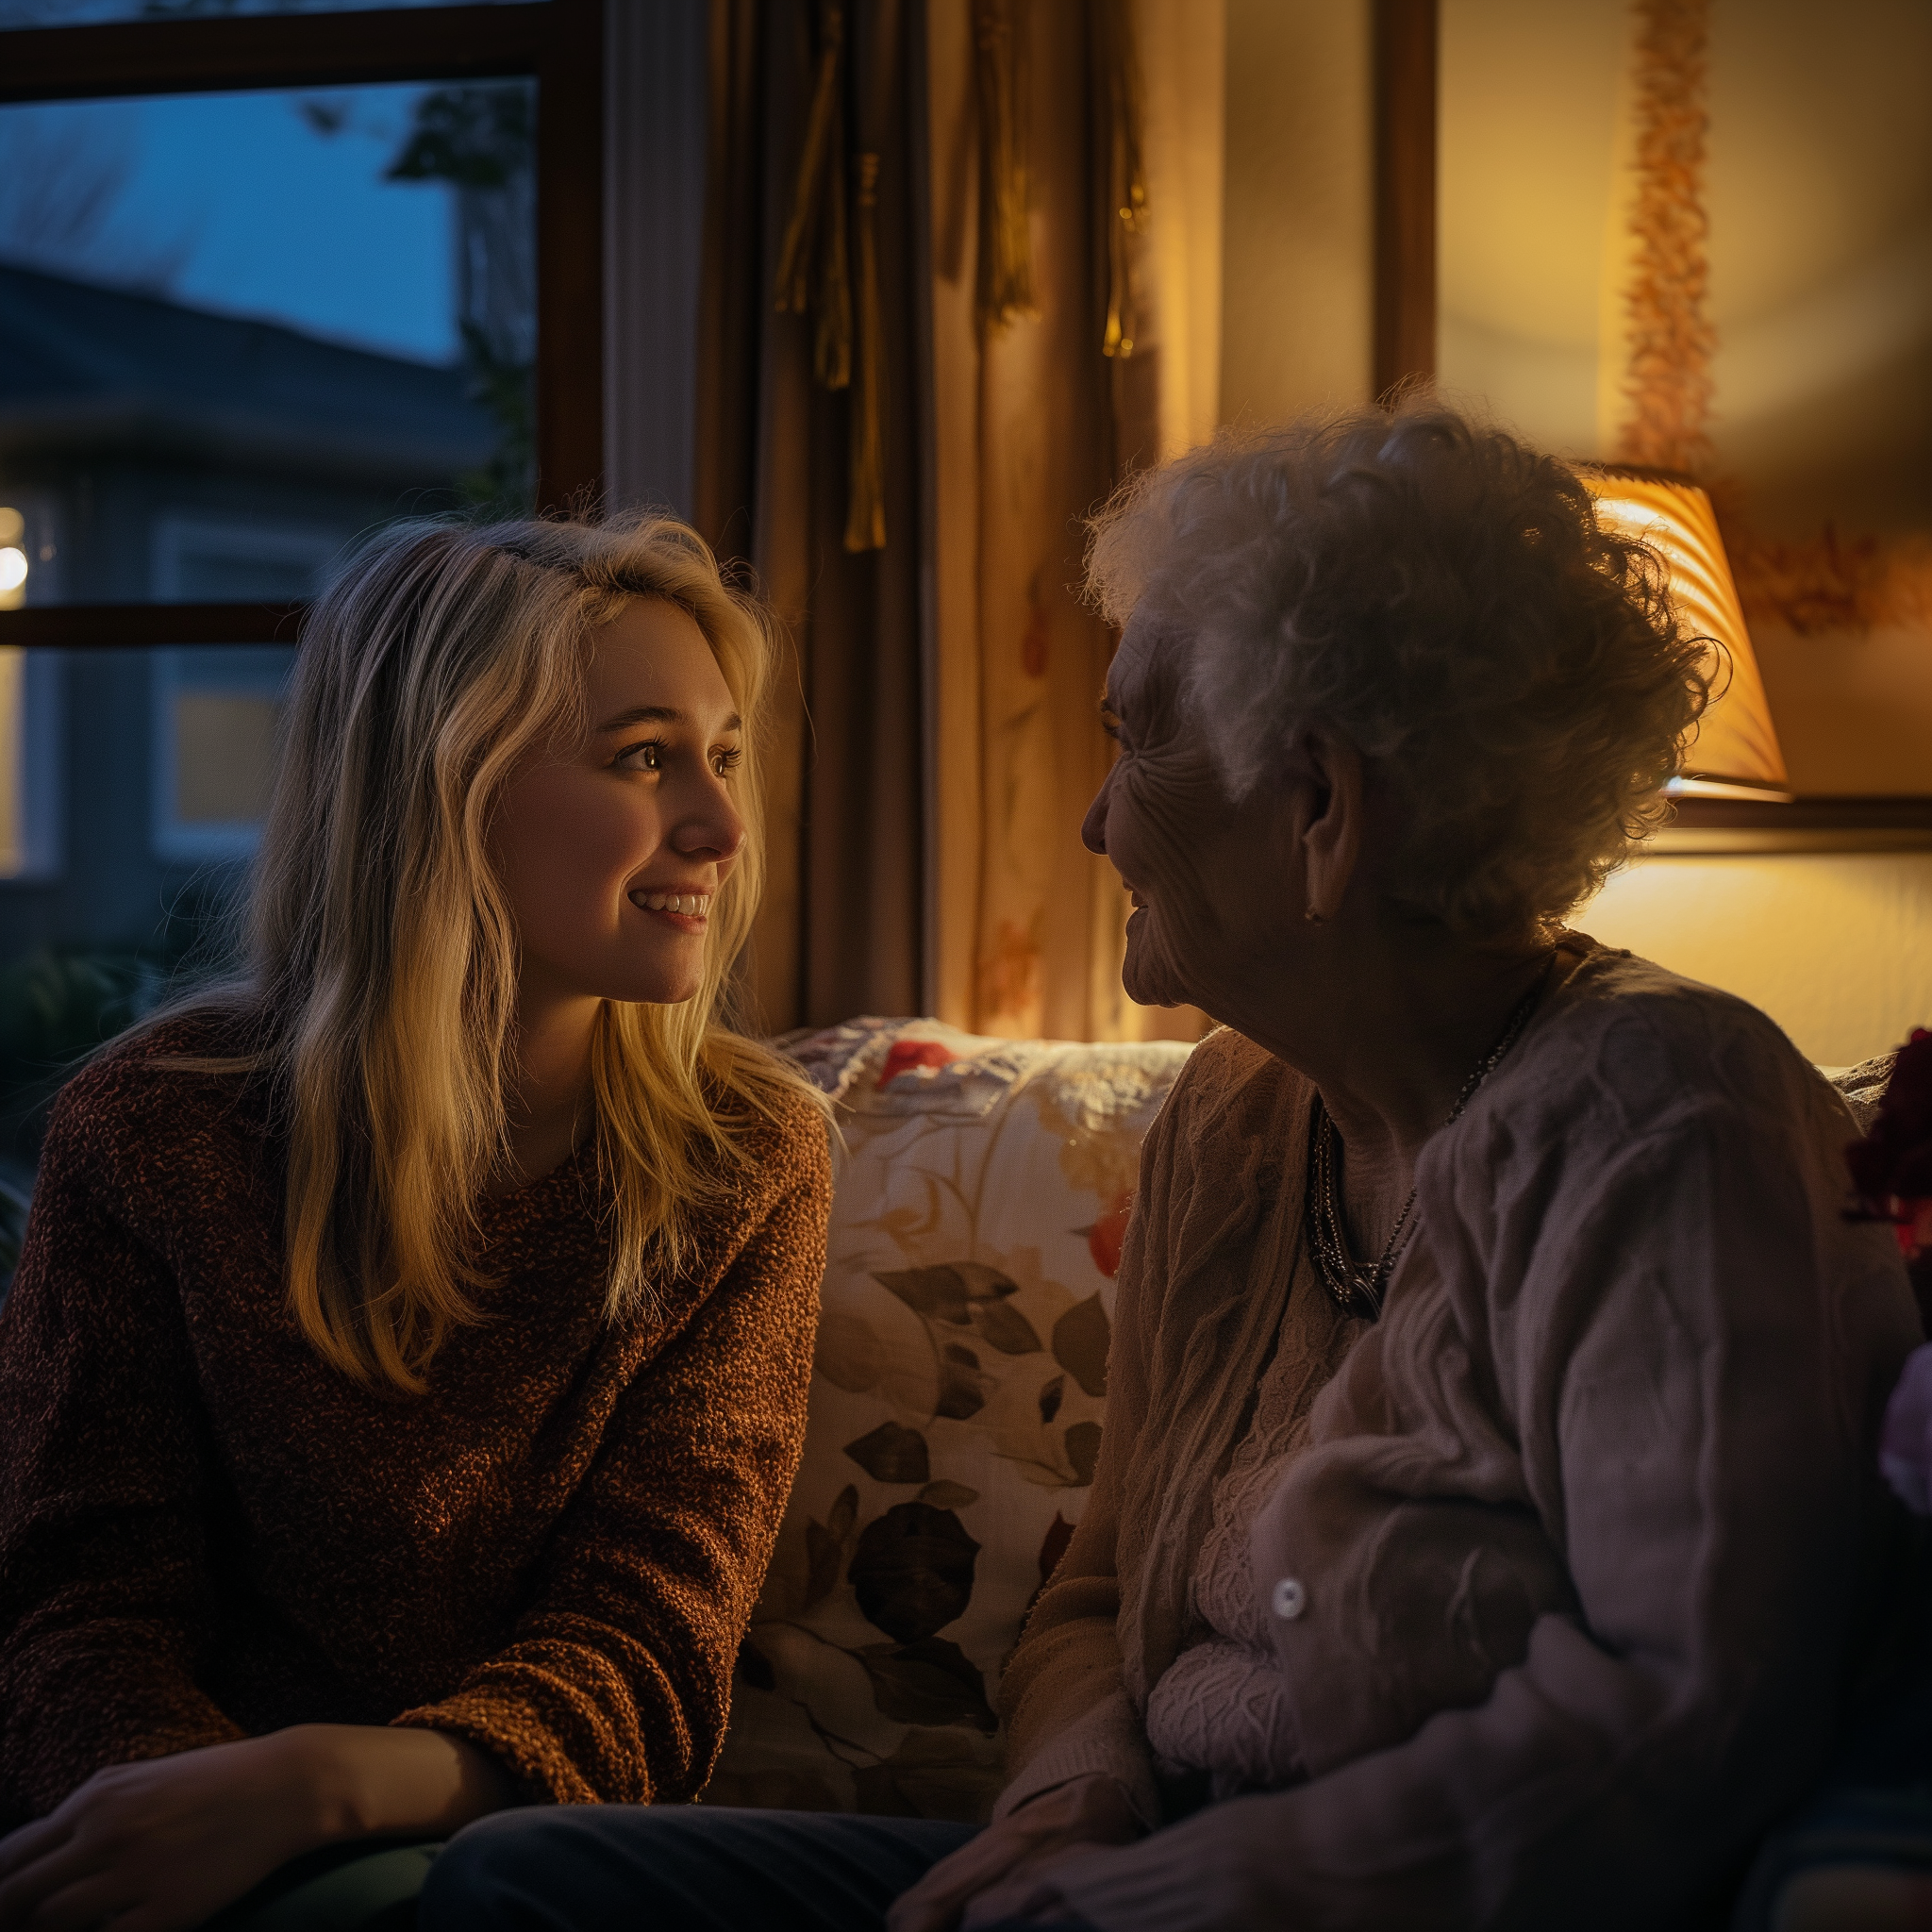 Une femme assise avec sa grand-mère au milieu de la nuit | Source : Midjourney